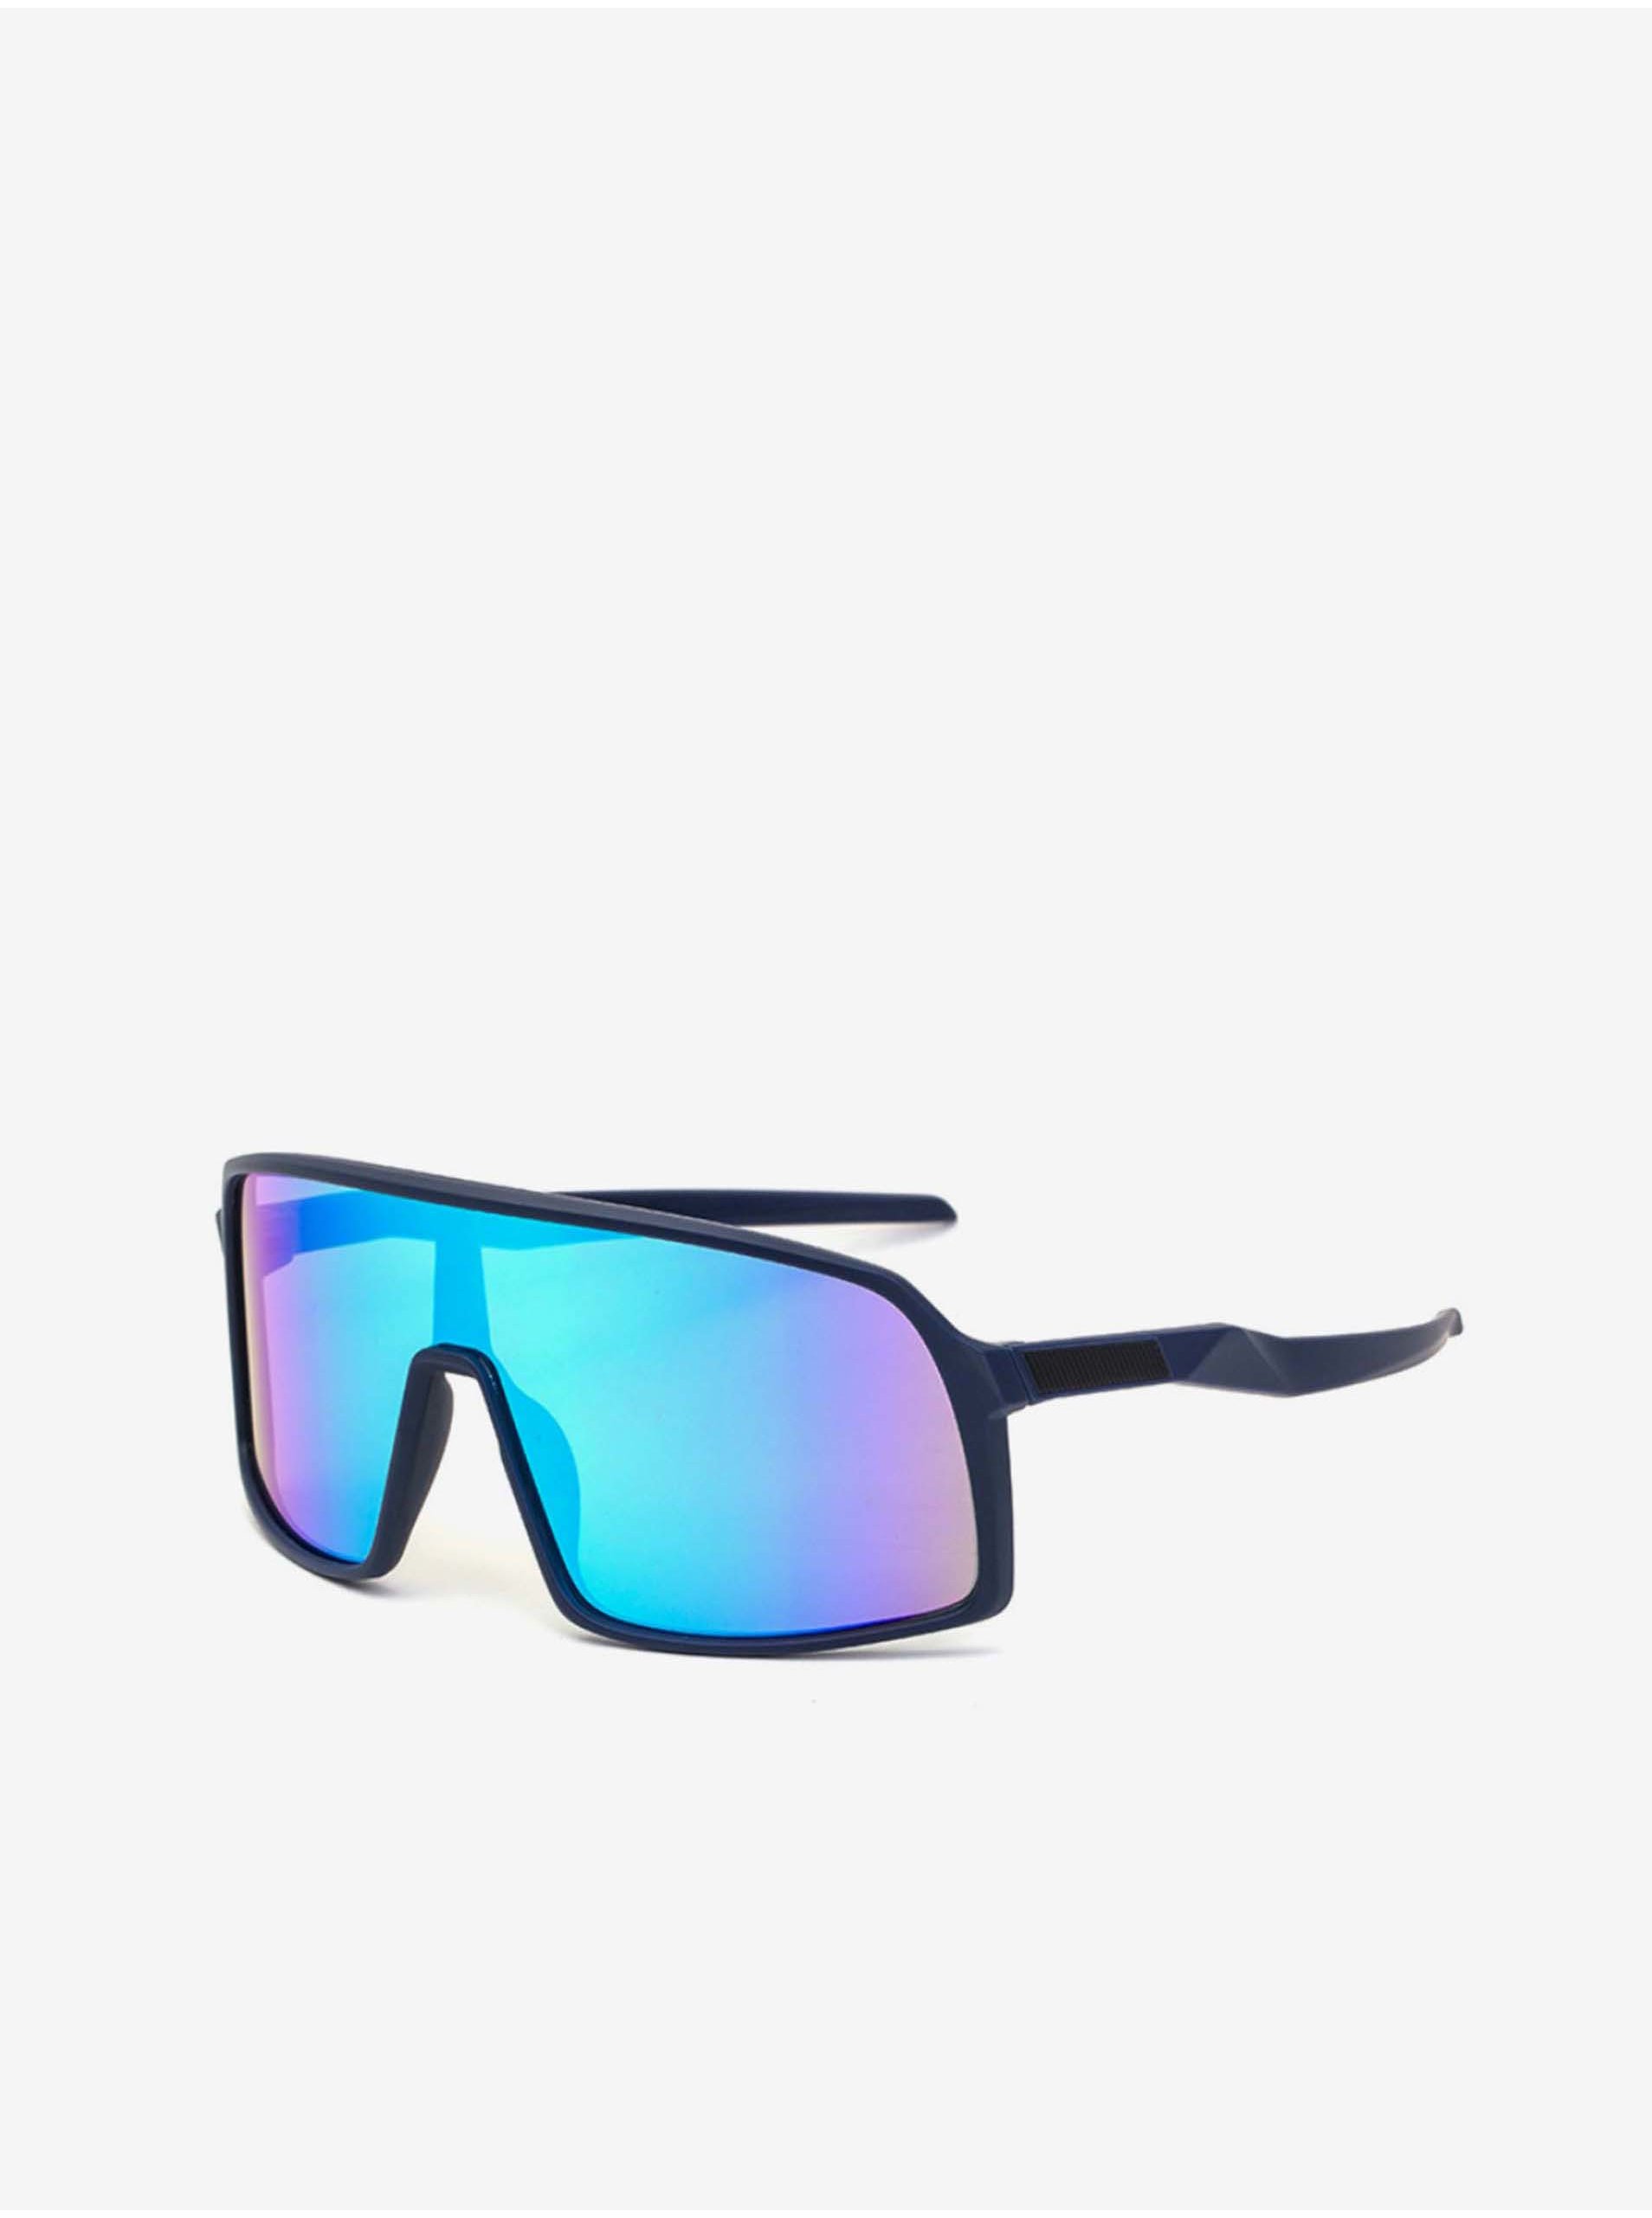 Lacno Modré slnečné okuliare VeyRey Truden